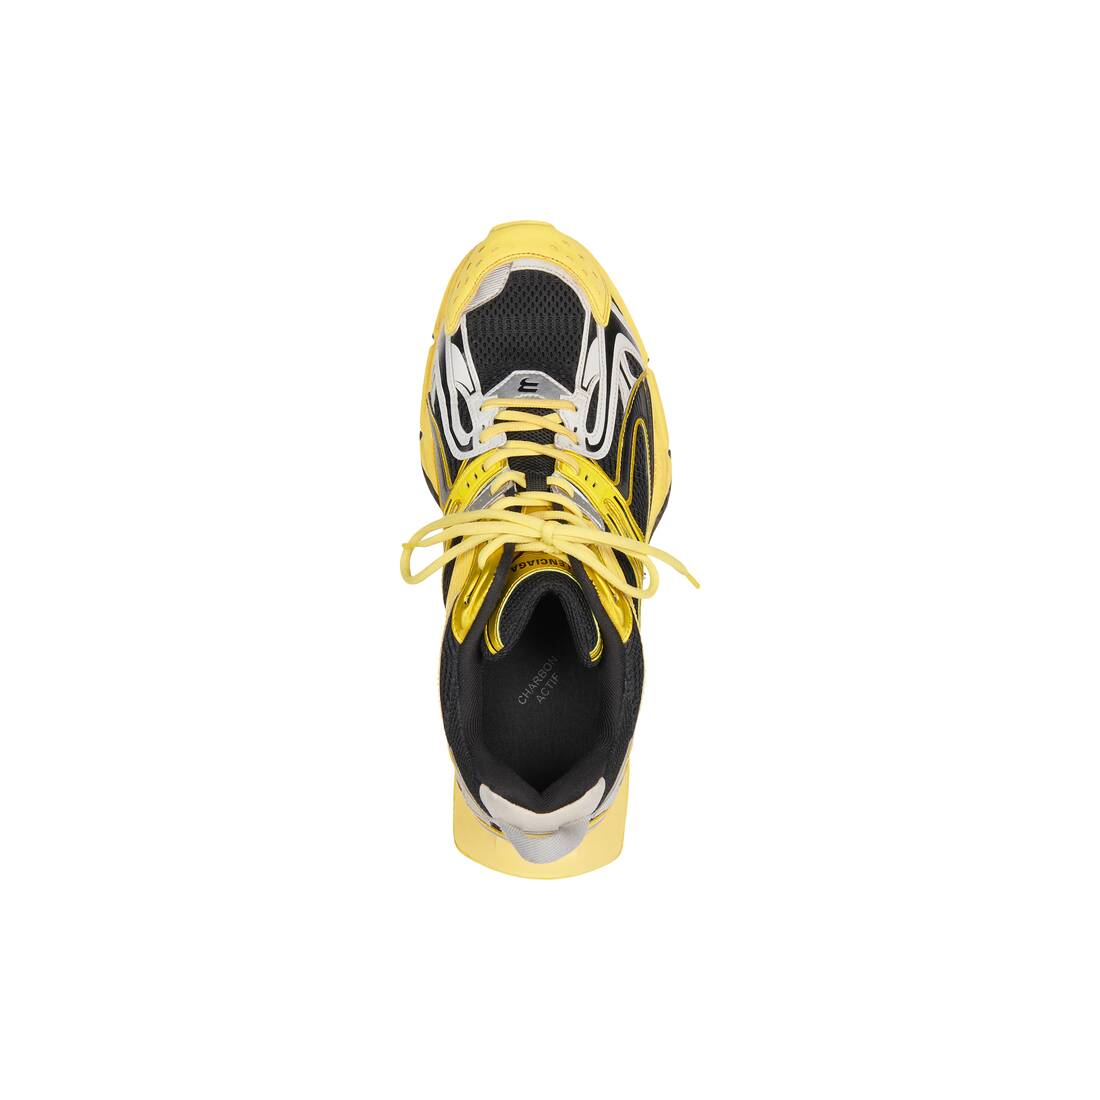 Men's X-pander Sneaker in Yellow/grey/black